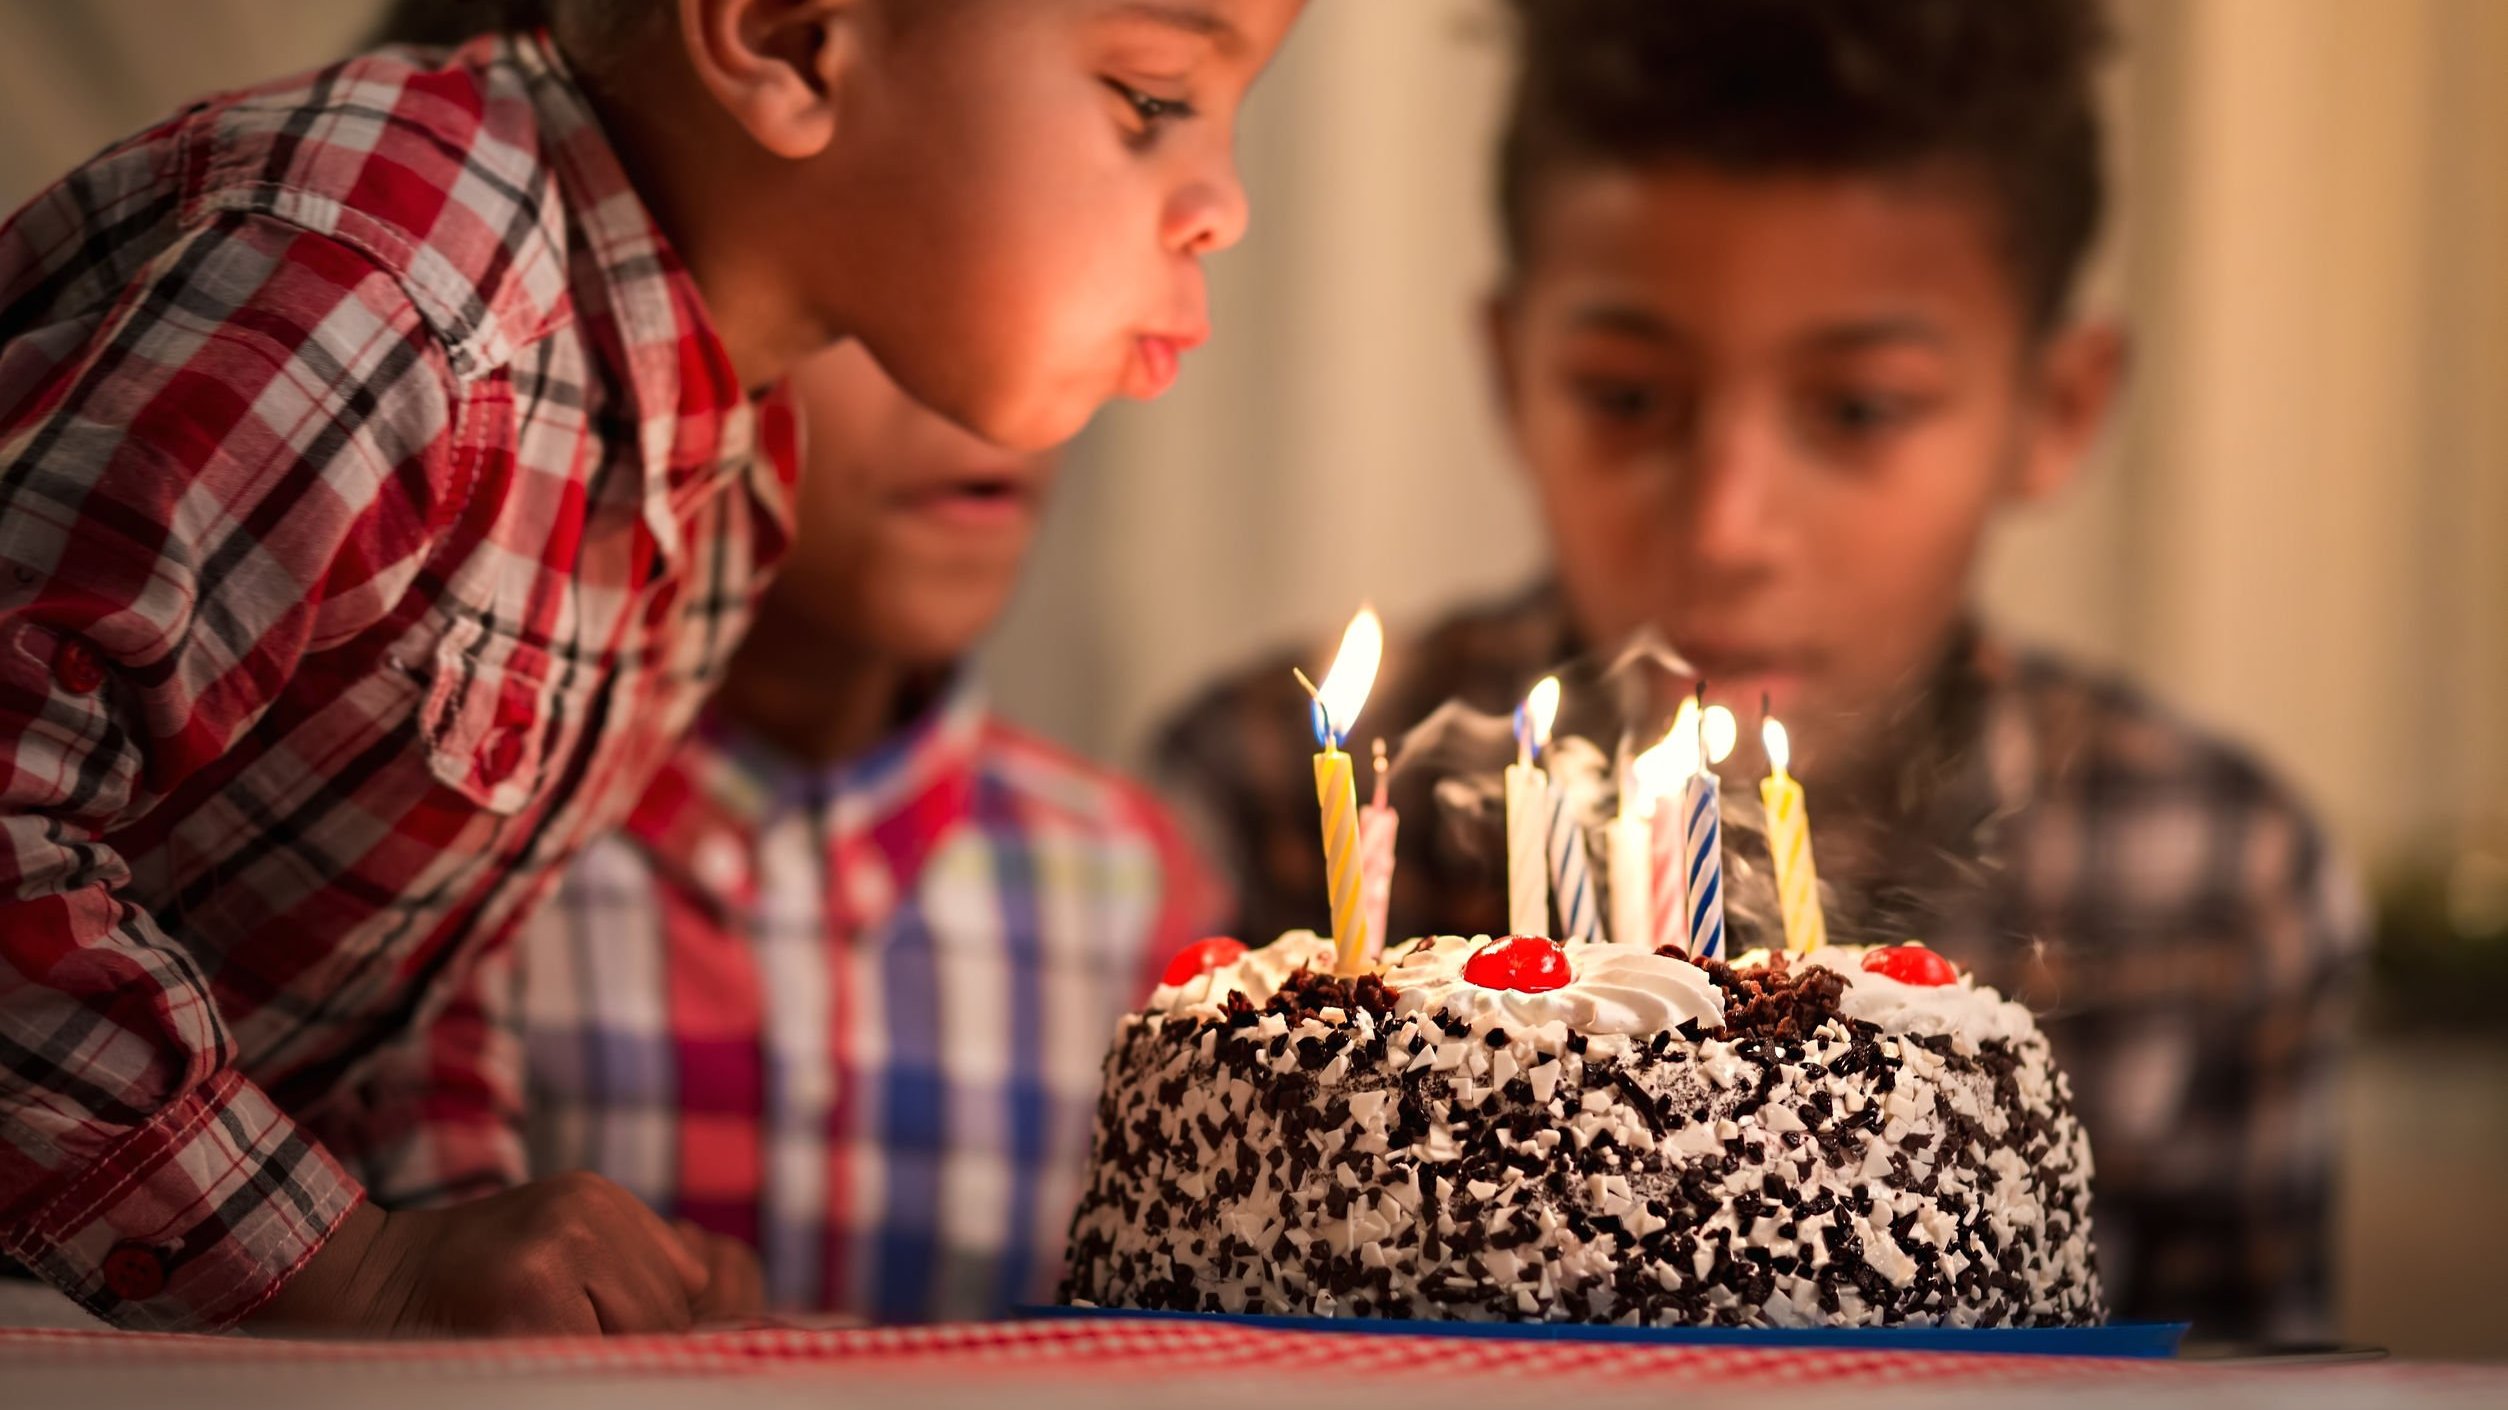 Menino pequeno assoprando velas em cima de um bolo, e um menino mais velho ao seu lado olha a cena.